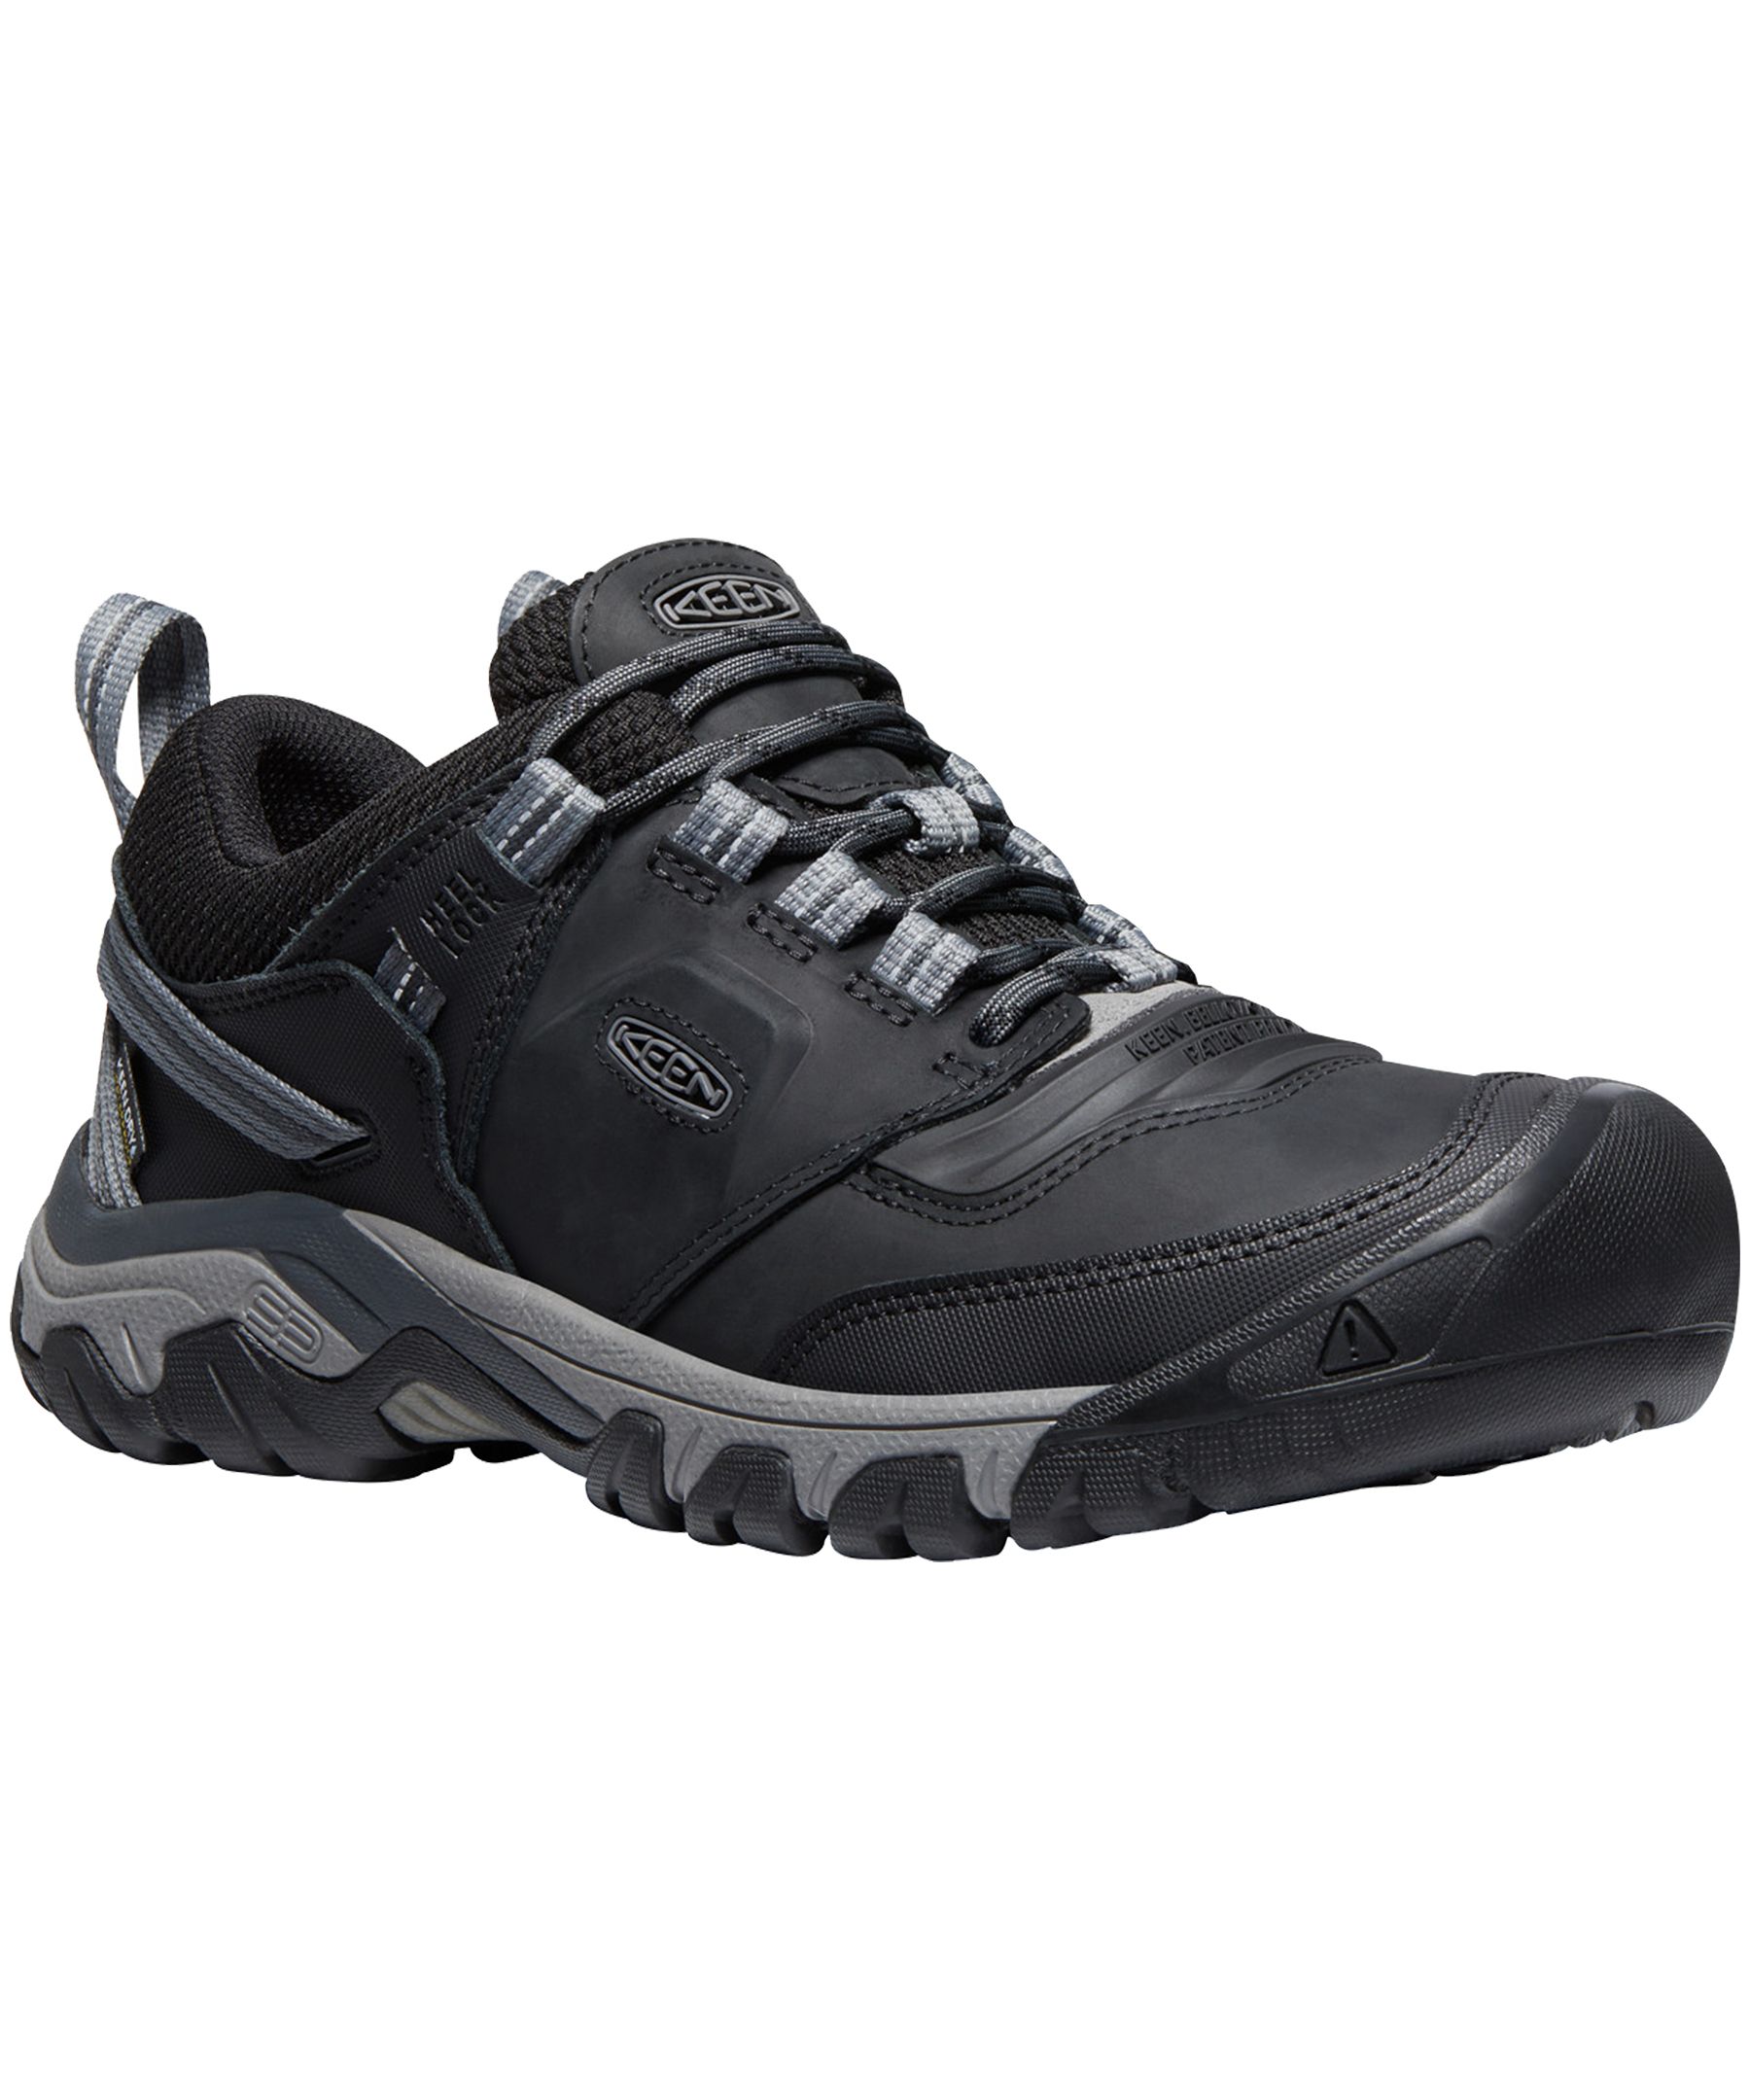 Keen Men's Ridge Flex Waterproof Hiking Shoes | Marks